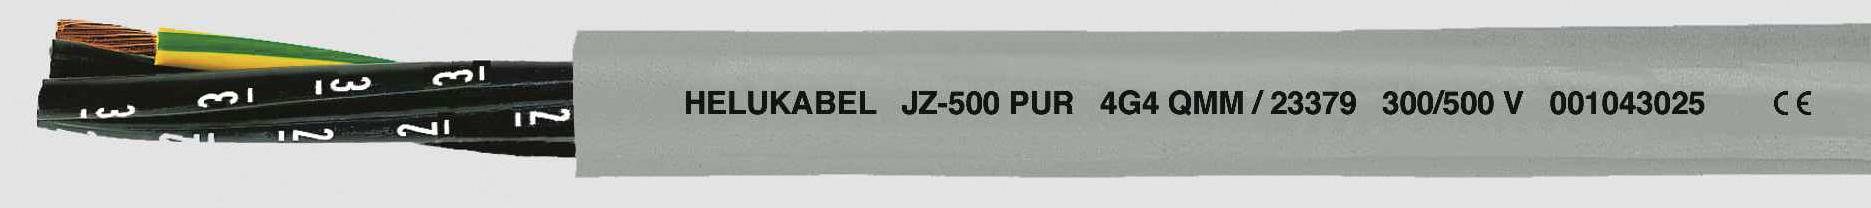 HELUKABEL JZ-500 PUR Steuerleitung 7 G 0.50 mm² Grau 23321 100 m